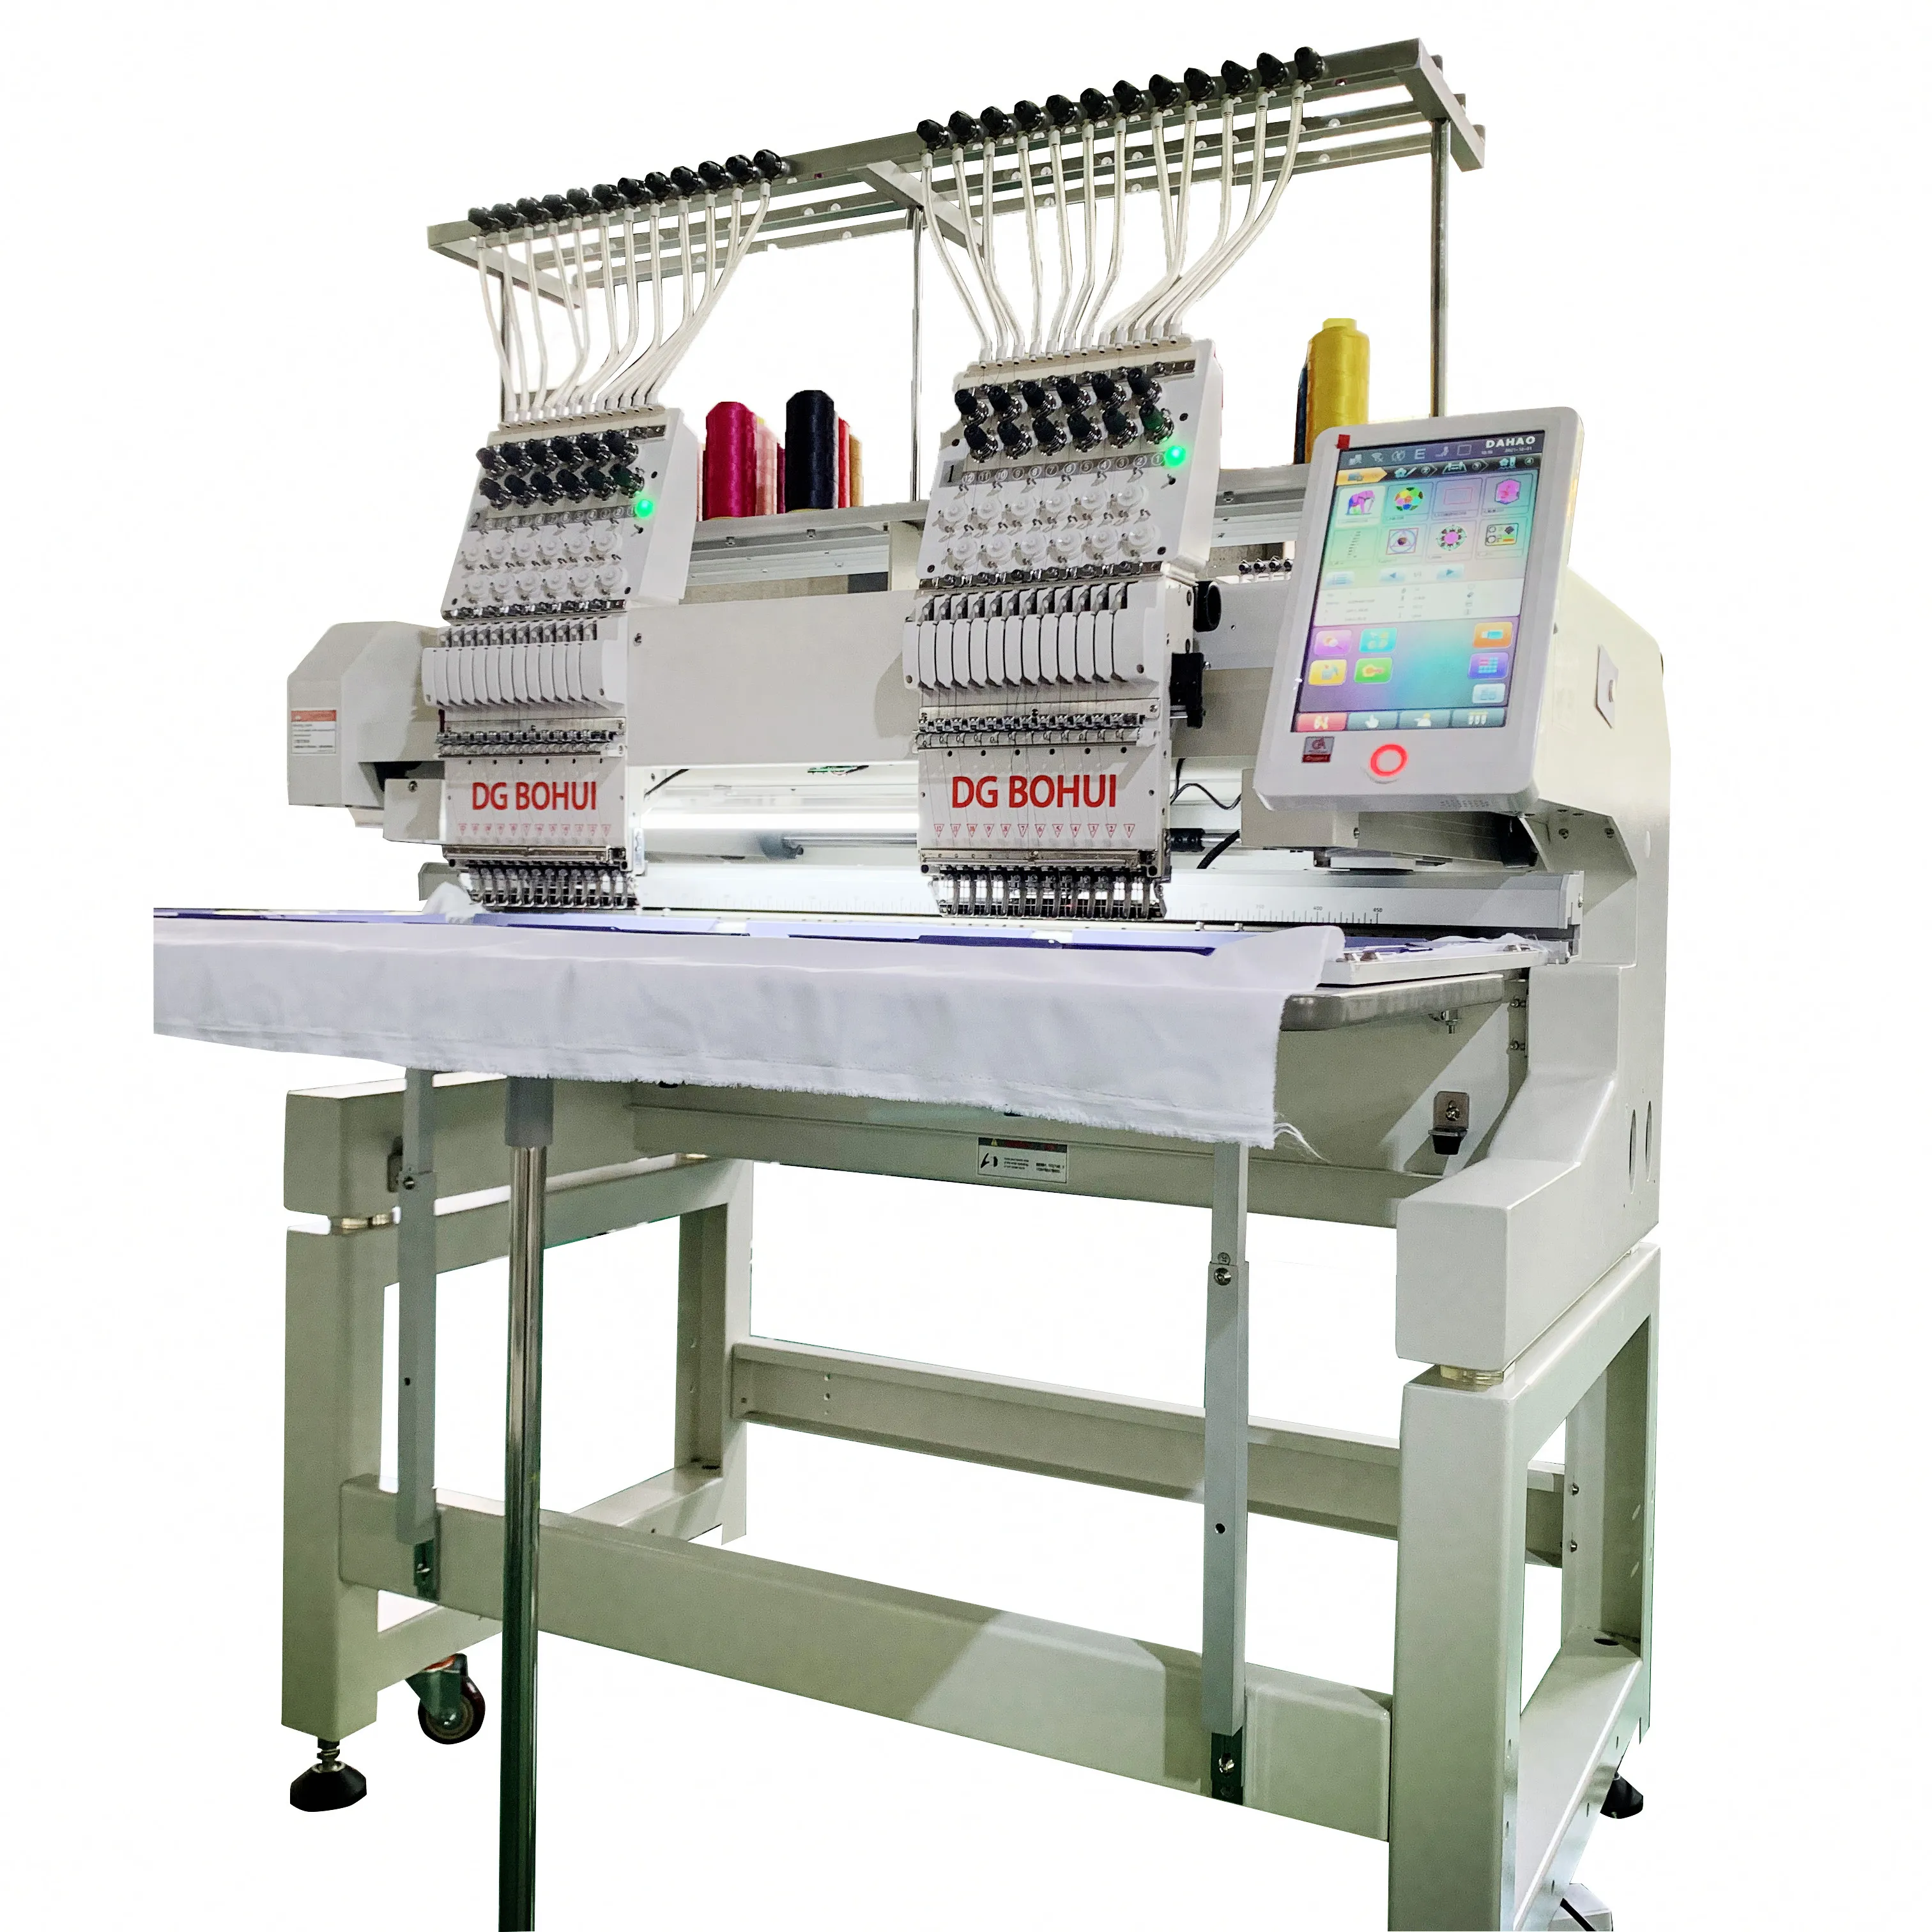 Dg bohui bordado dois cabeças ce certificado máquina de bordado industrial fornecedor na china com boa qualidade